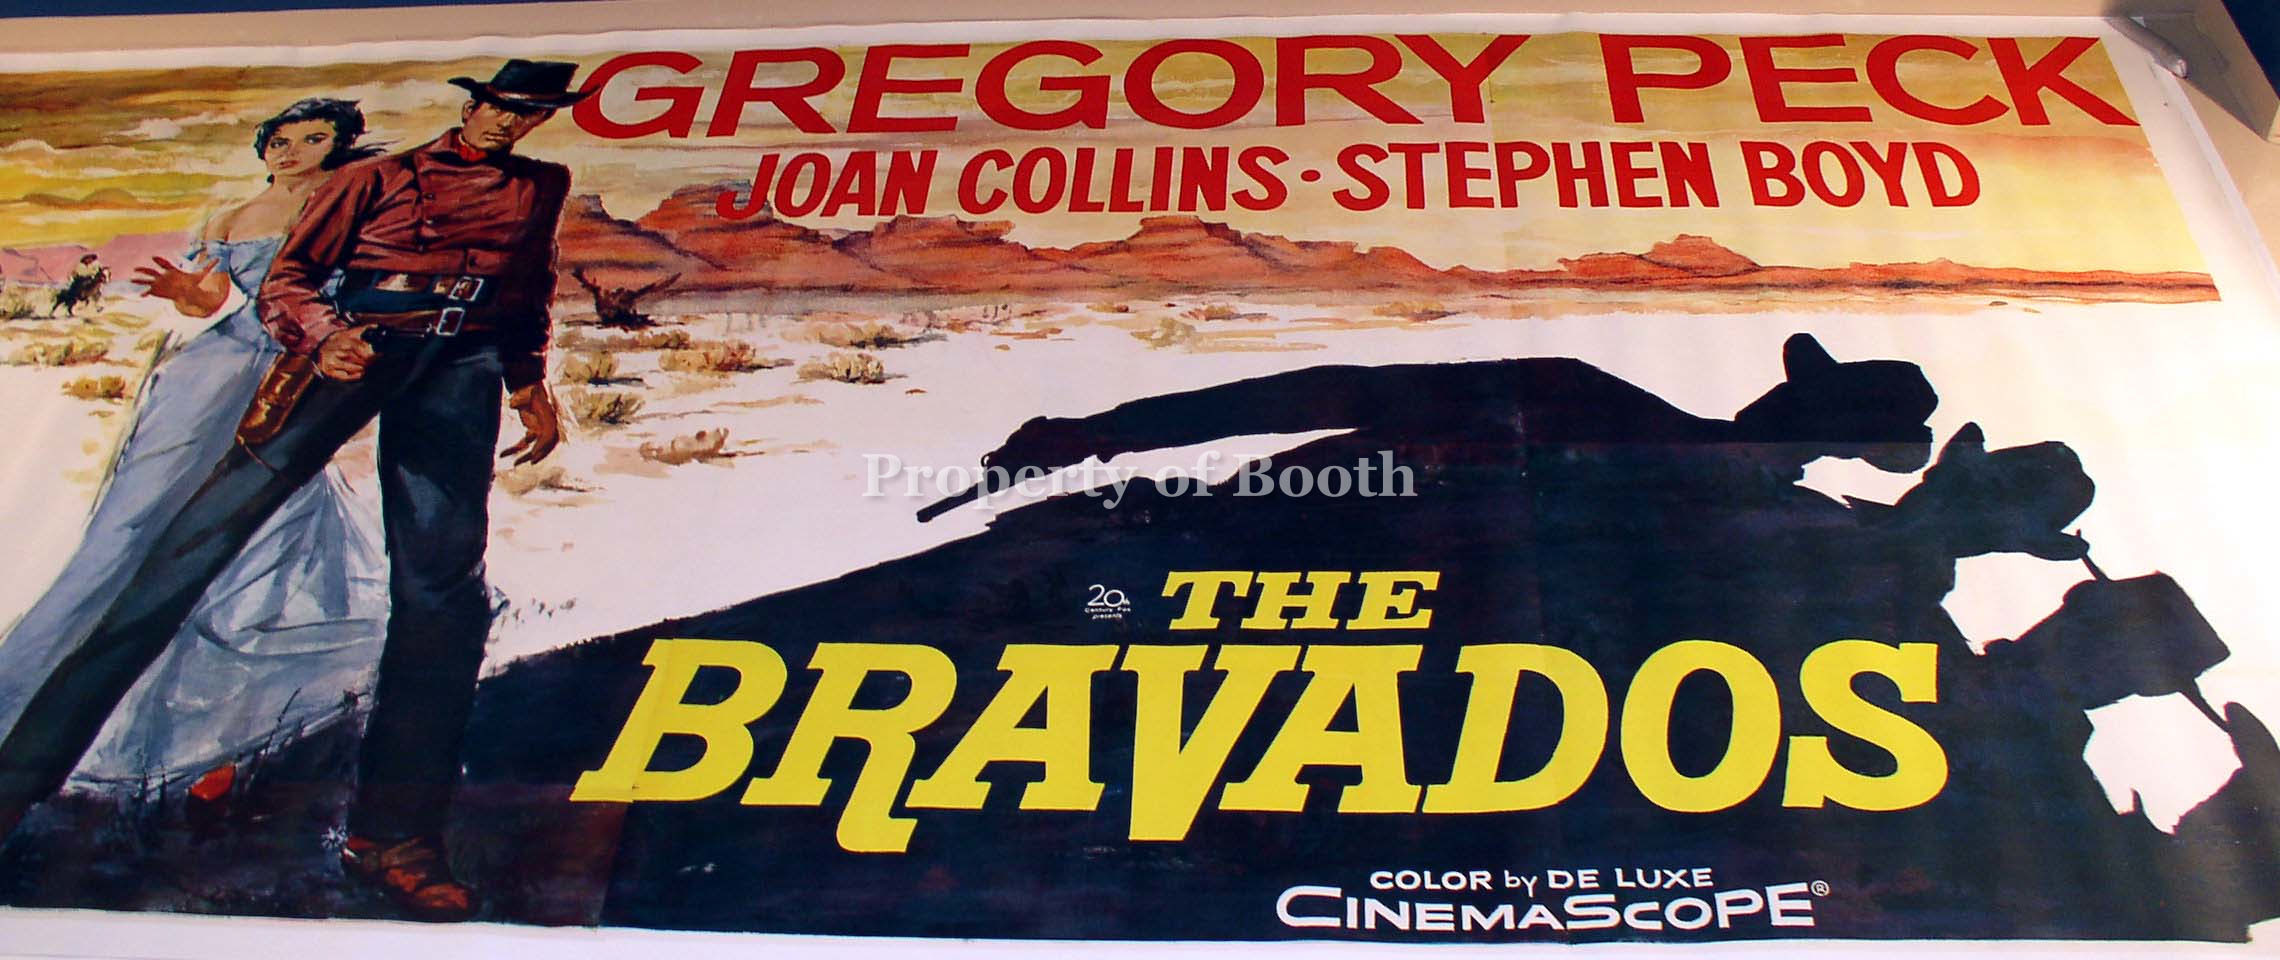 1958, The Bravados, 104.37 x 228.62"